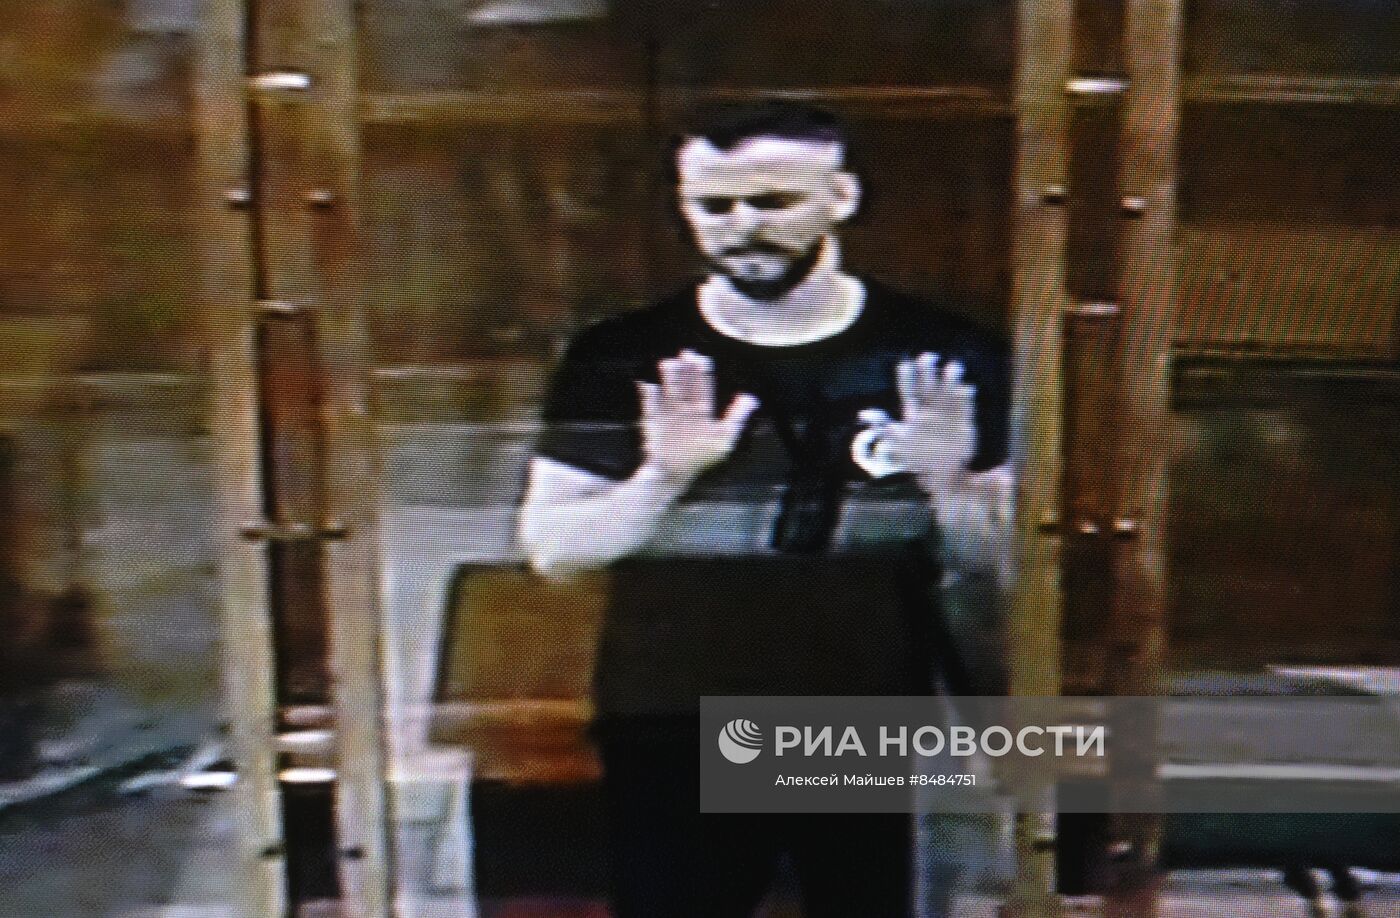 Оглашение приговора И. Сачкову, обвиняемому в госизмене 